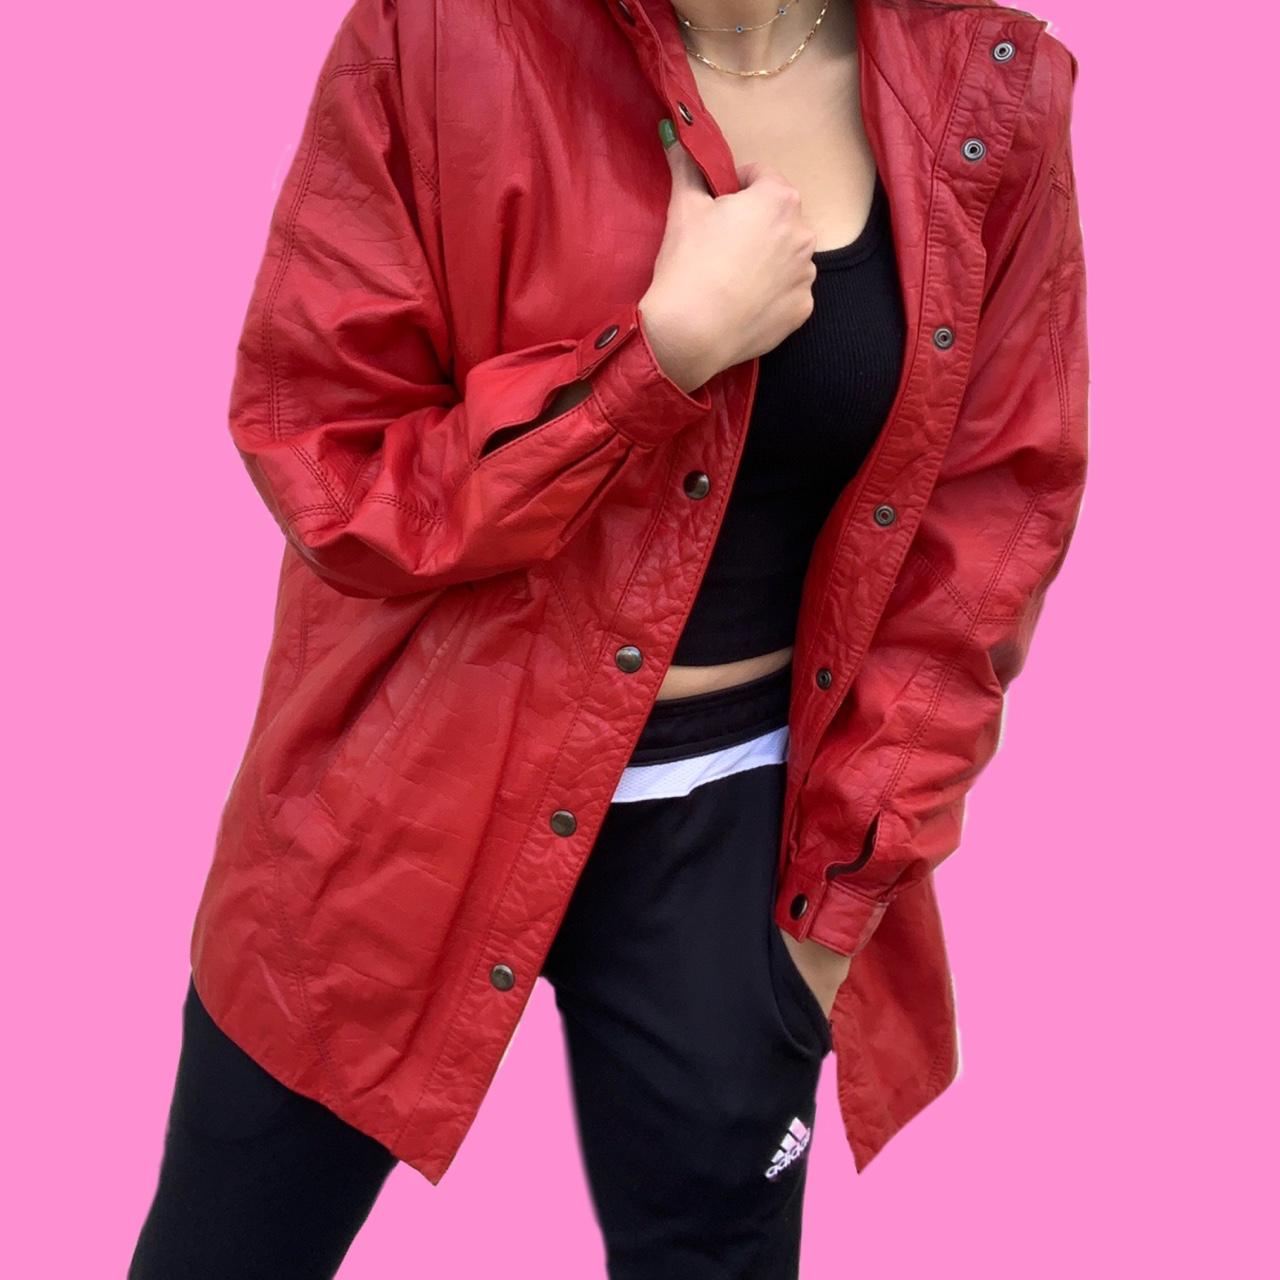 Vintage Red Leather jacket -Vintage 1980’s -100%... - Depop